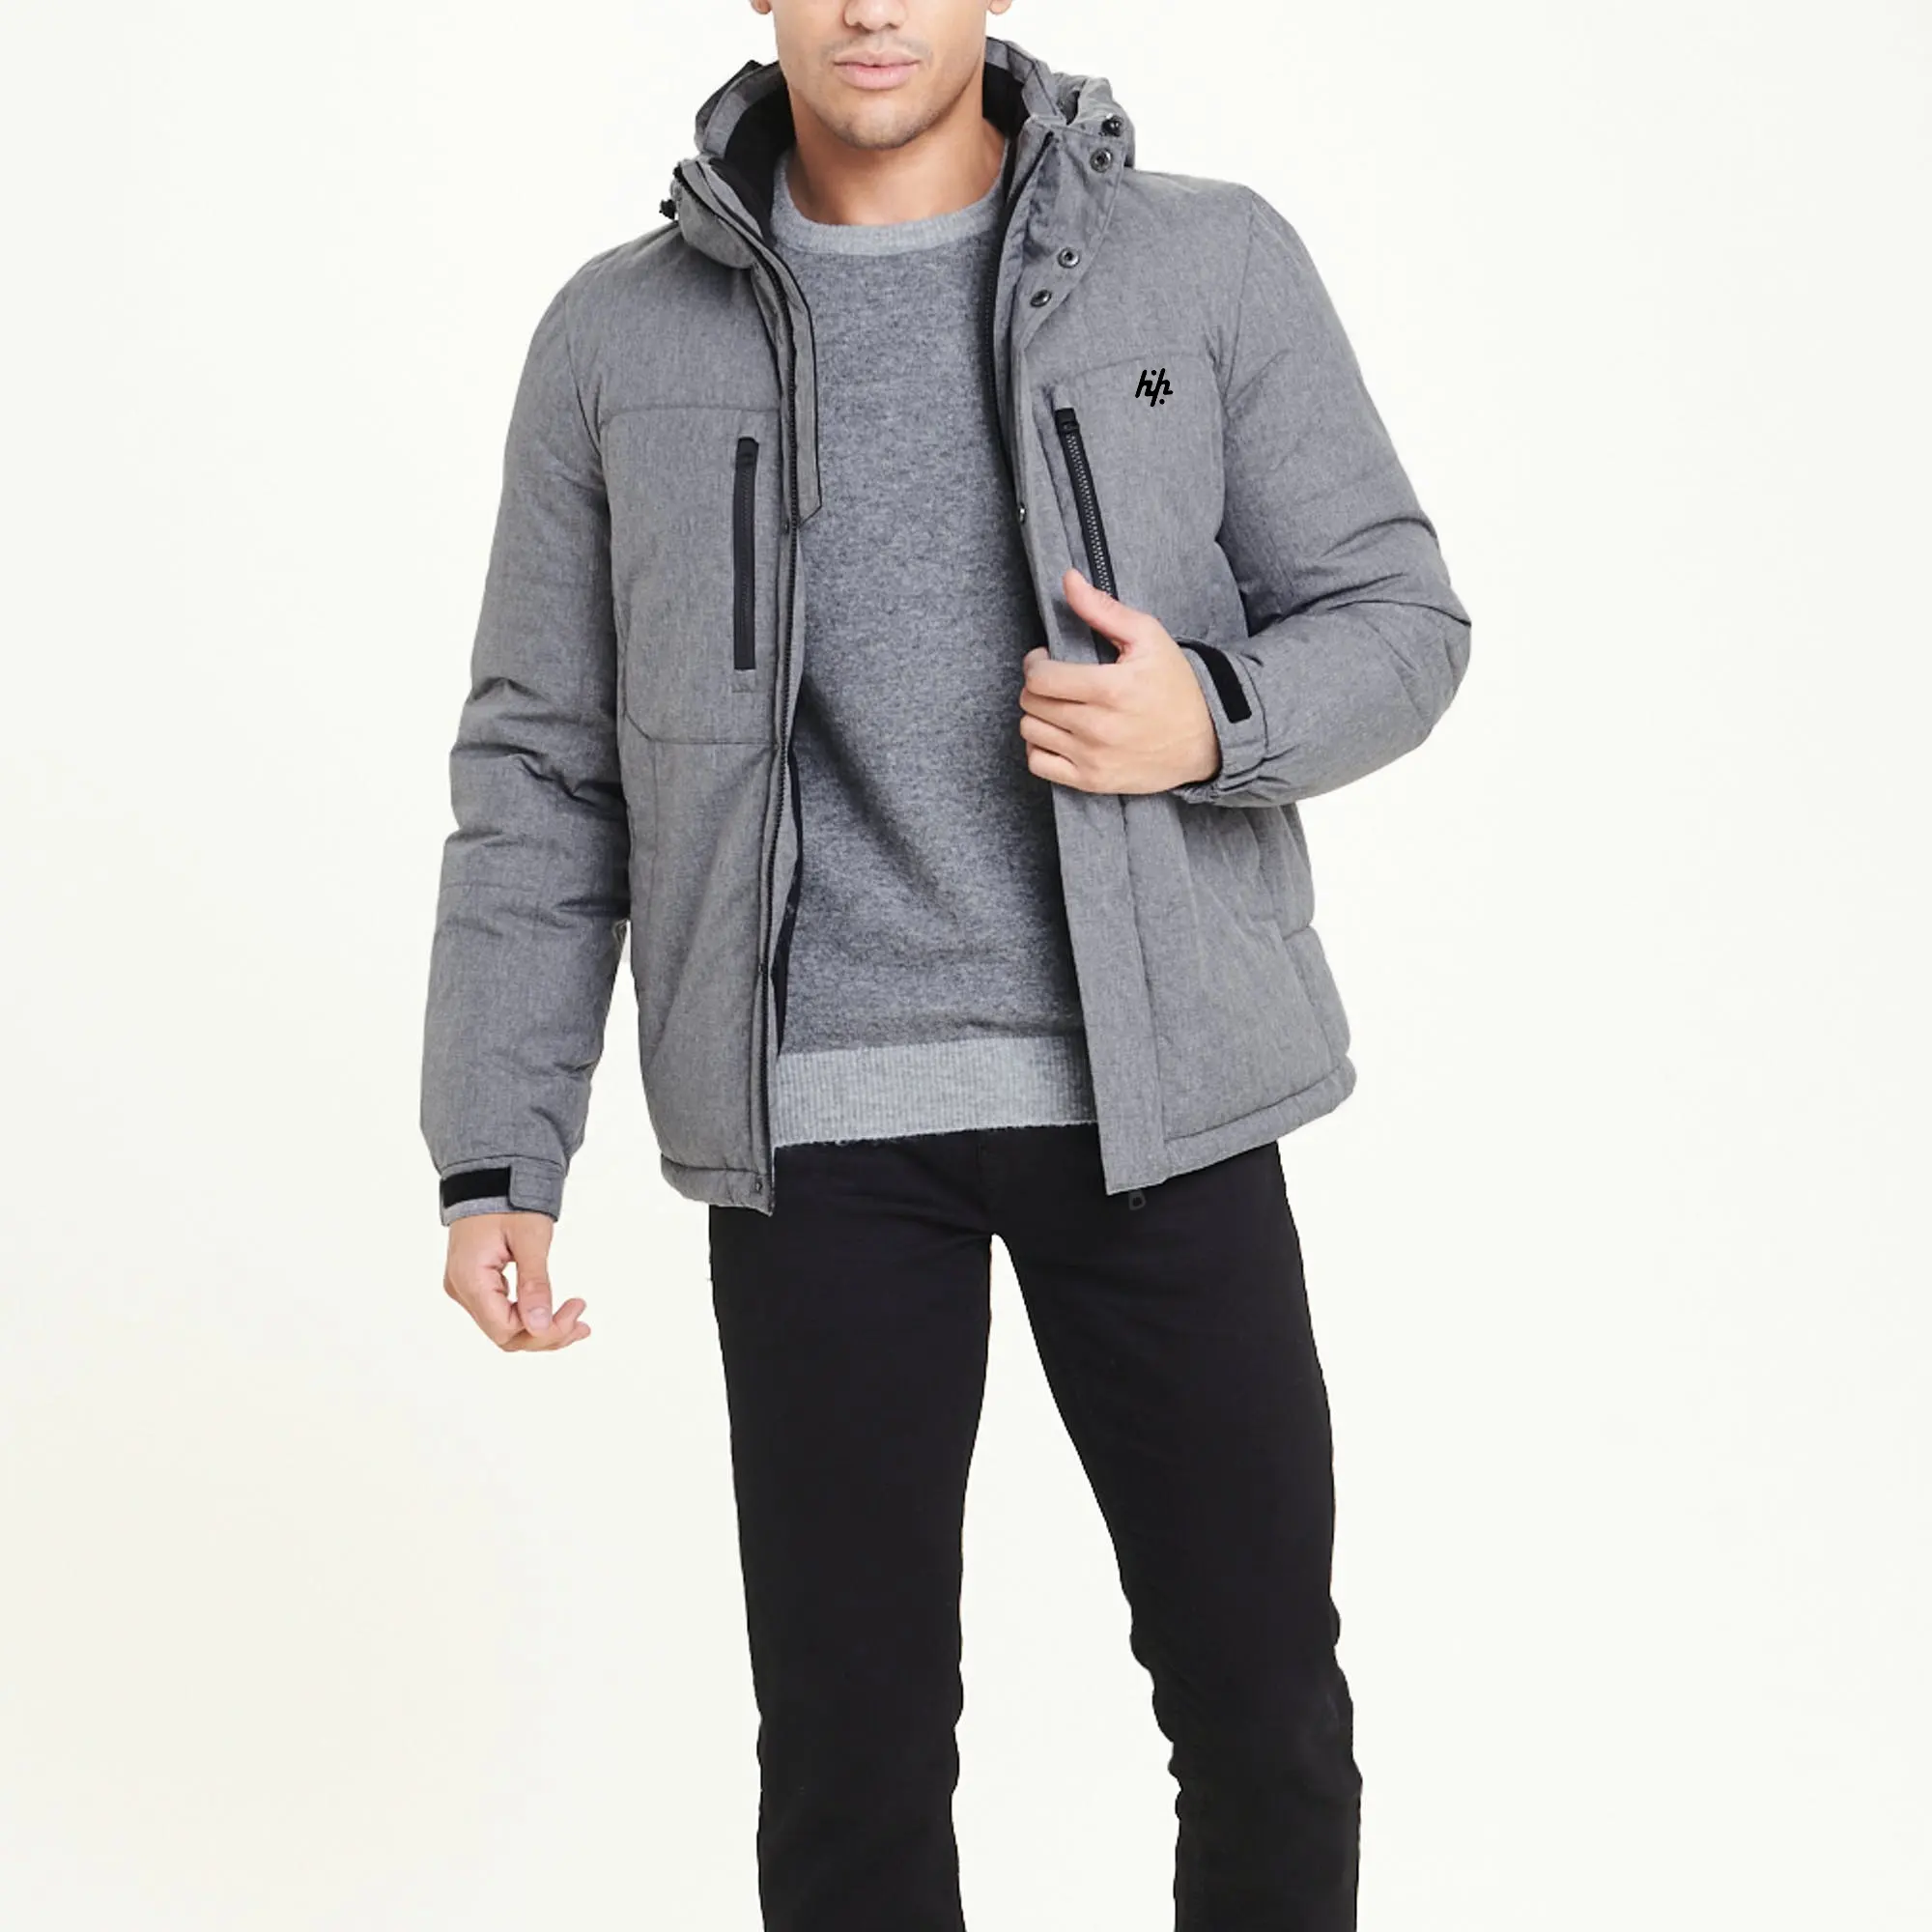 Jaqueta de mangas compridas masculina, cinza puffer com capuz personalizado oem jaqueta de moda para homens jaqueta de mangas compridas (fabricação por produtos huzaifa)